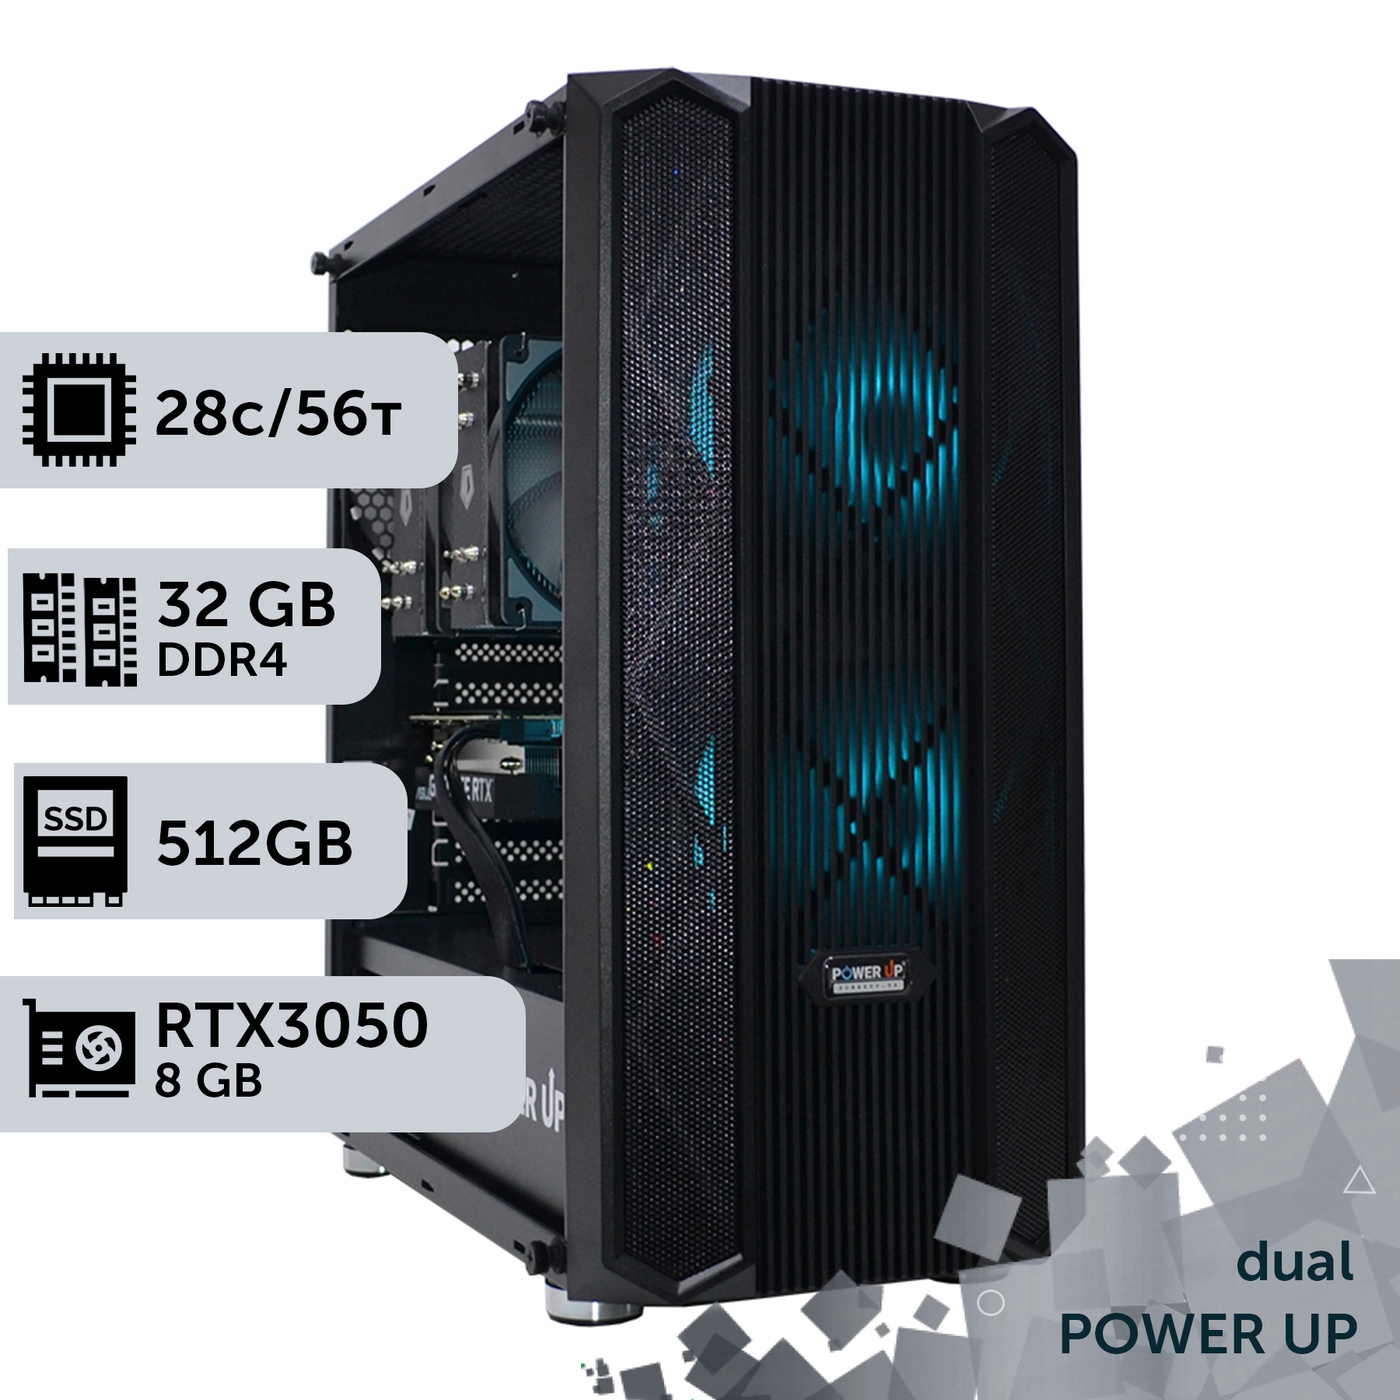 Двухпроцессорная рабочая станция PowerUp #314 Xeon E5 2680 v4 x2/32 GB/SSD 512GB/GeForce RTX 3050 8GB